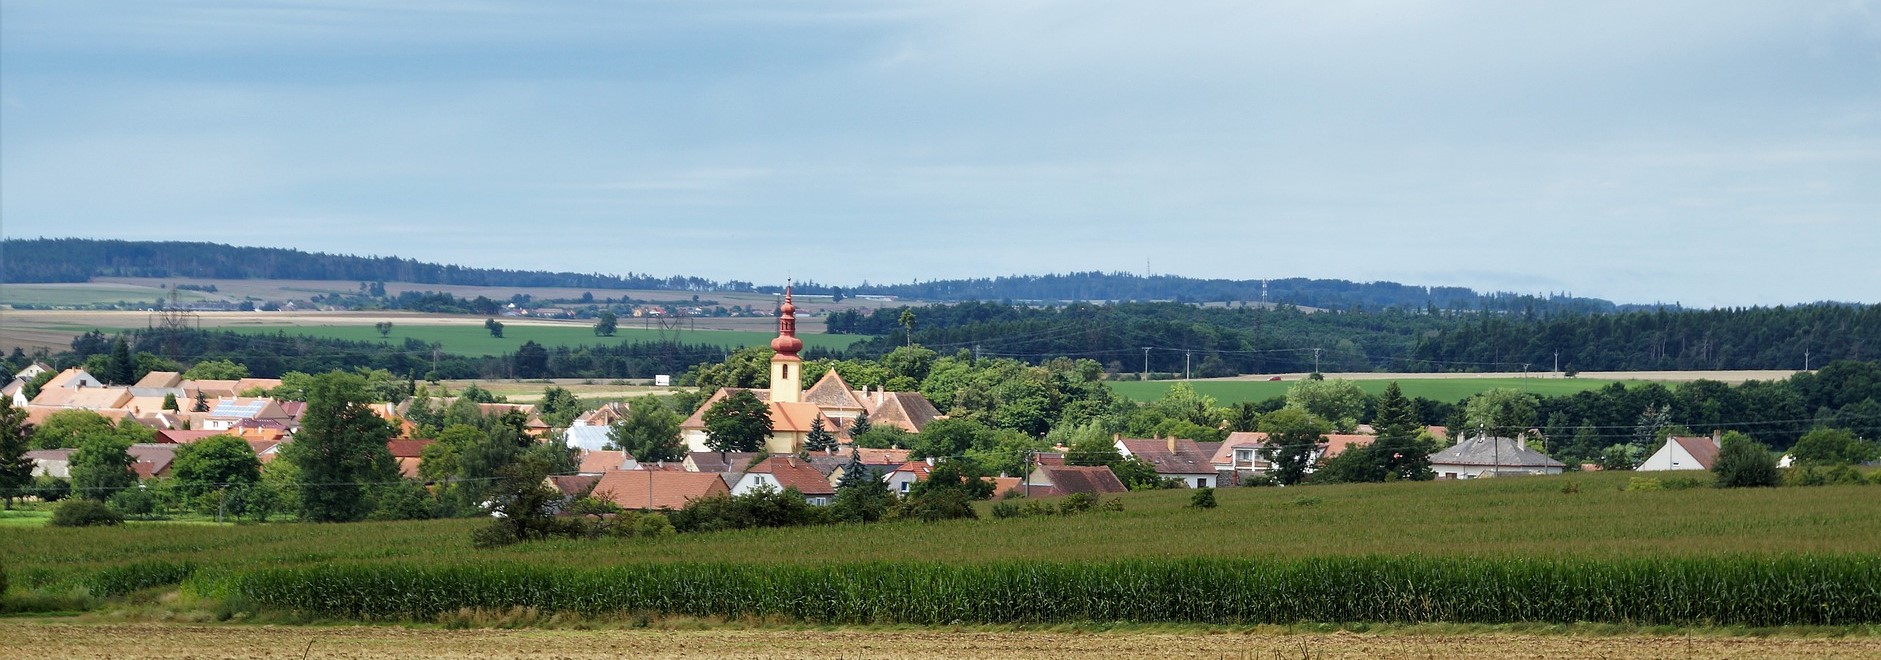 Village in the Czech Republic